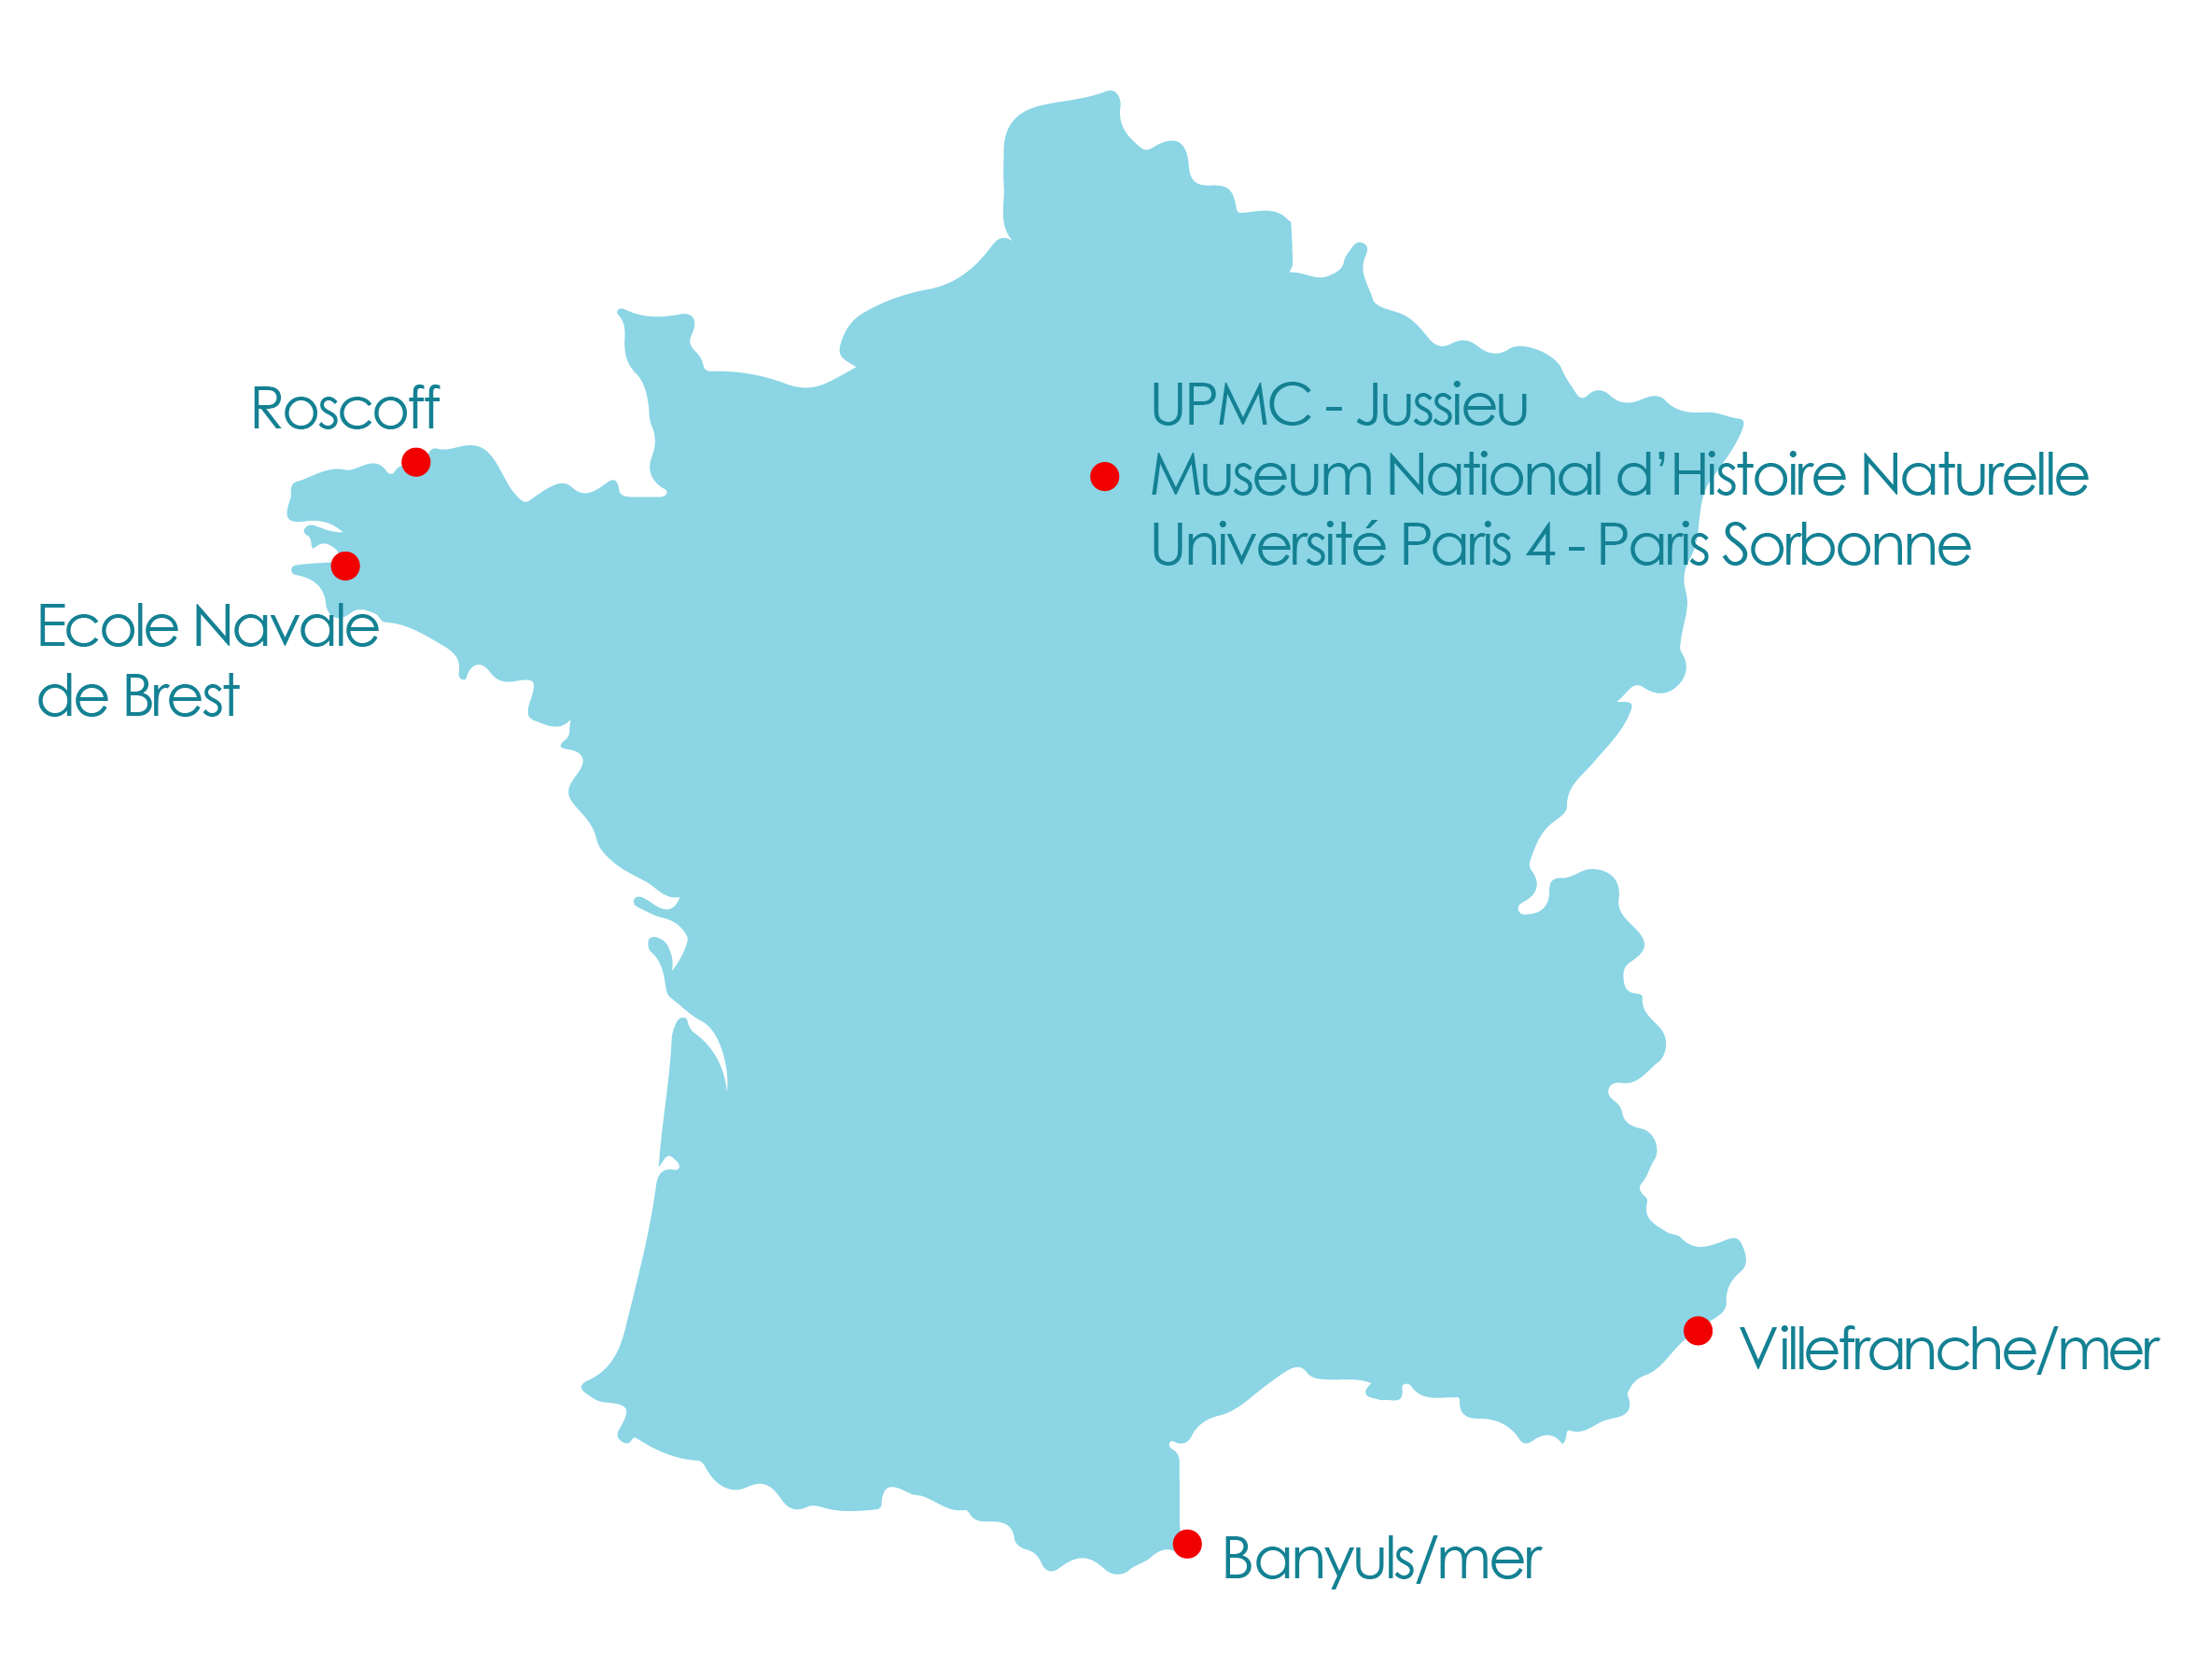 Carte de France avec la position géographique des établissements associés au projet